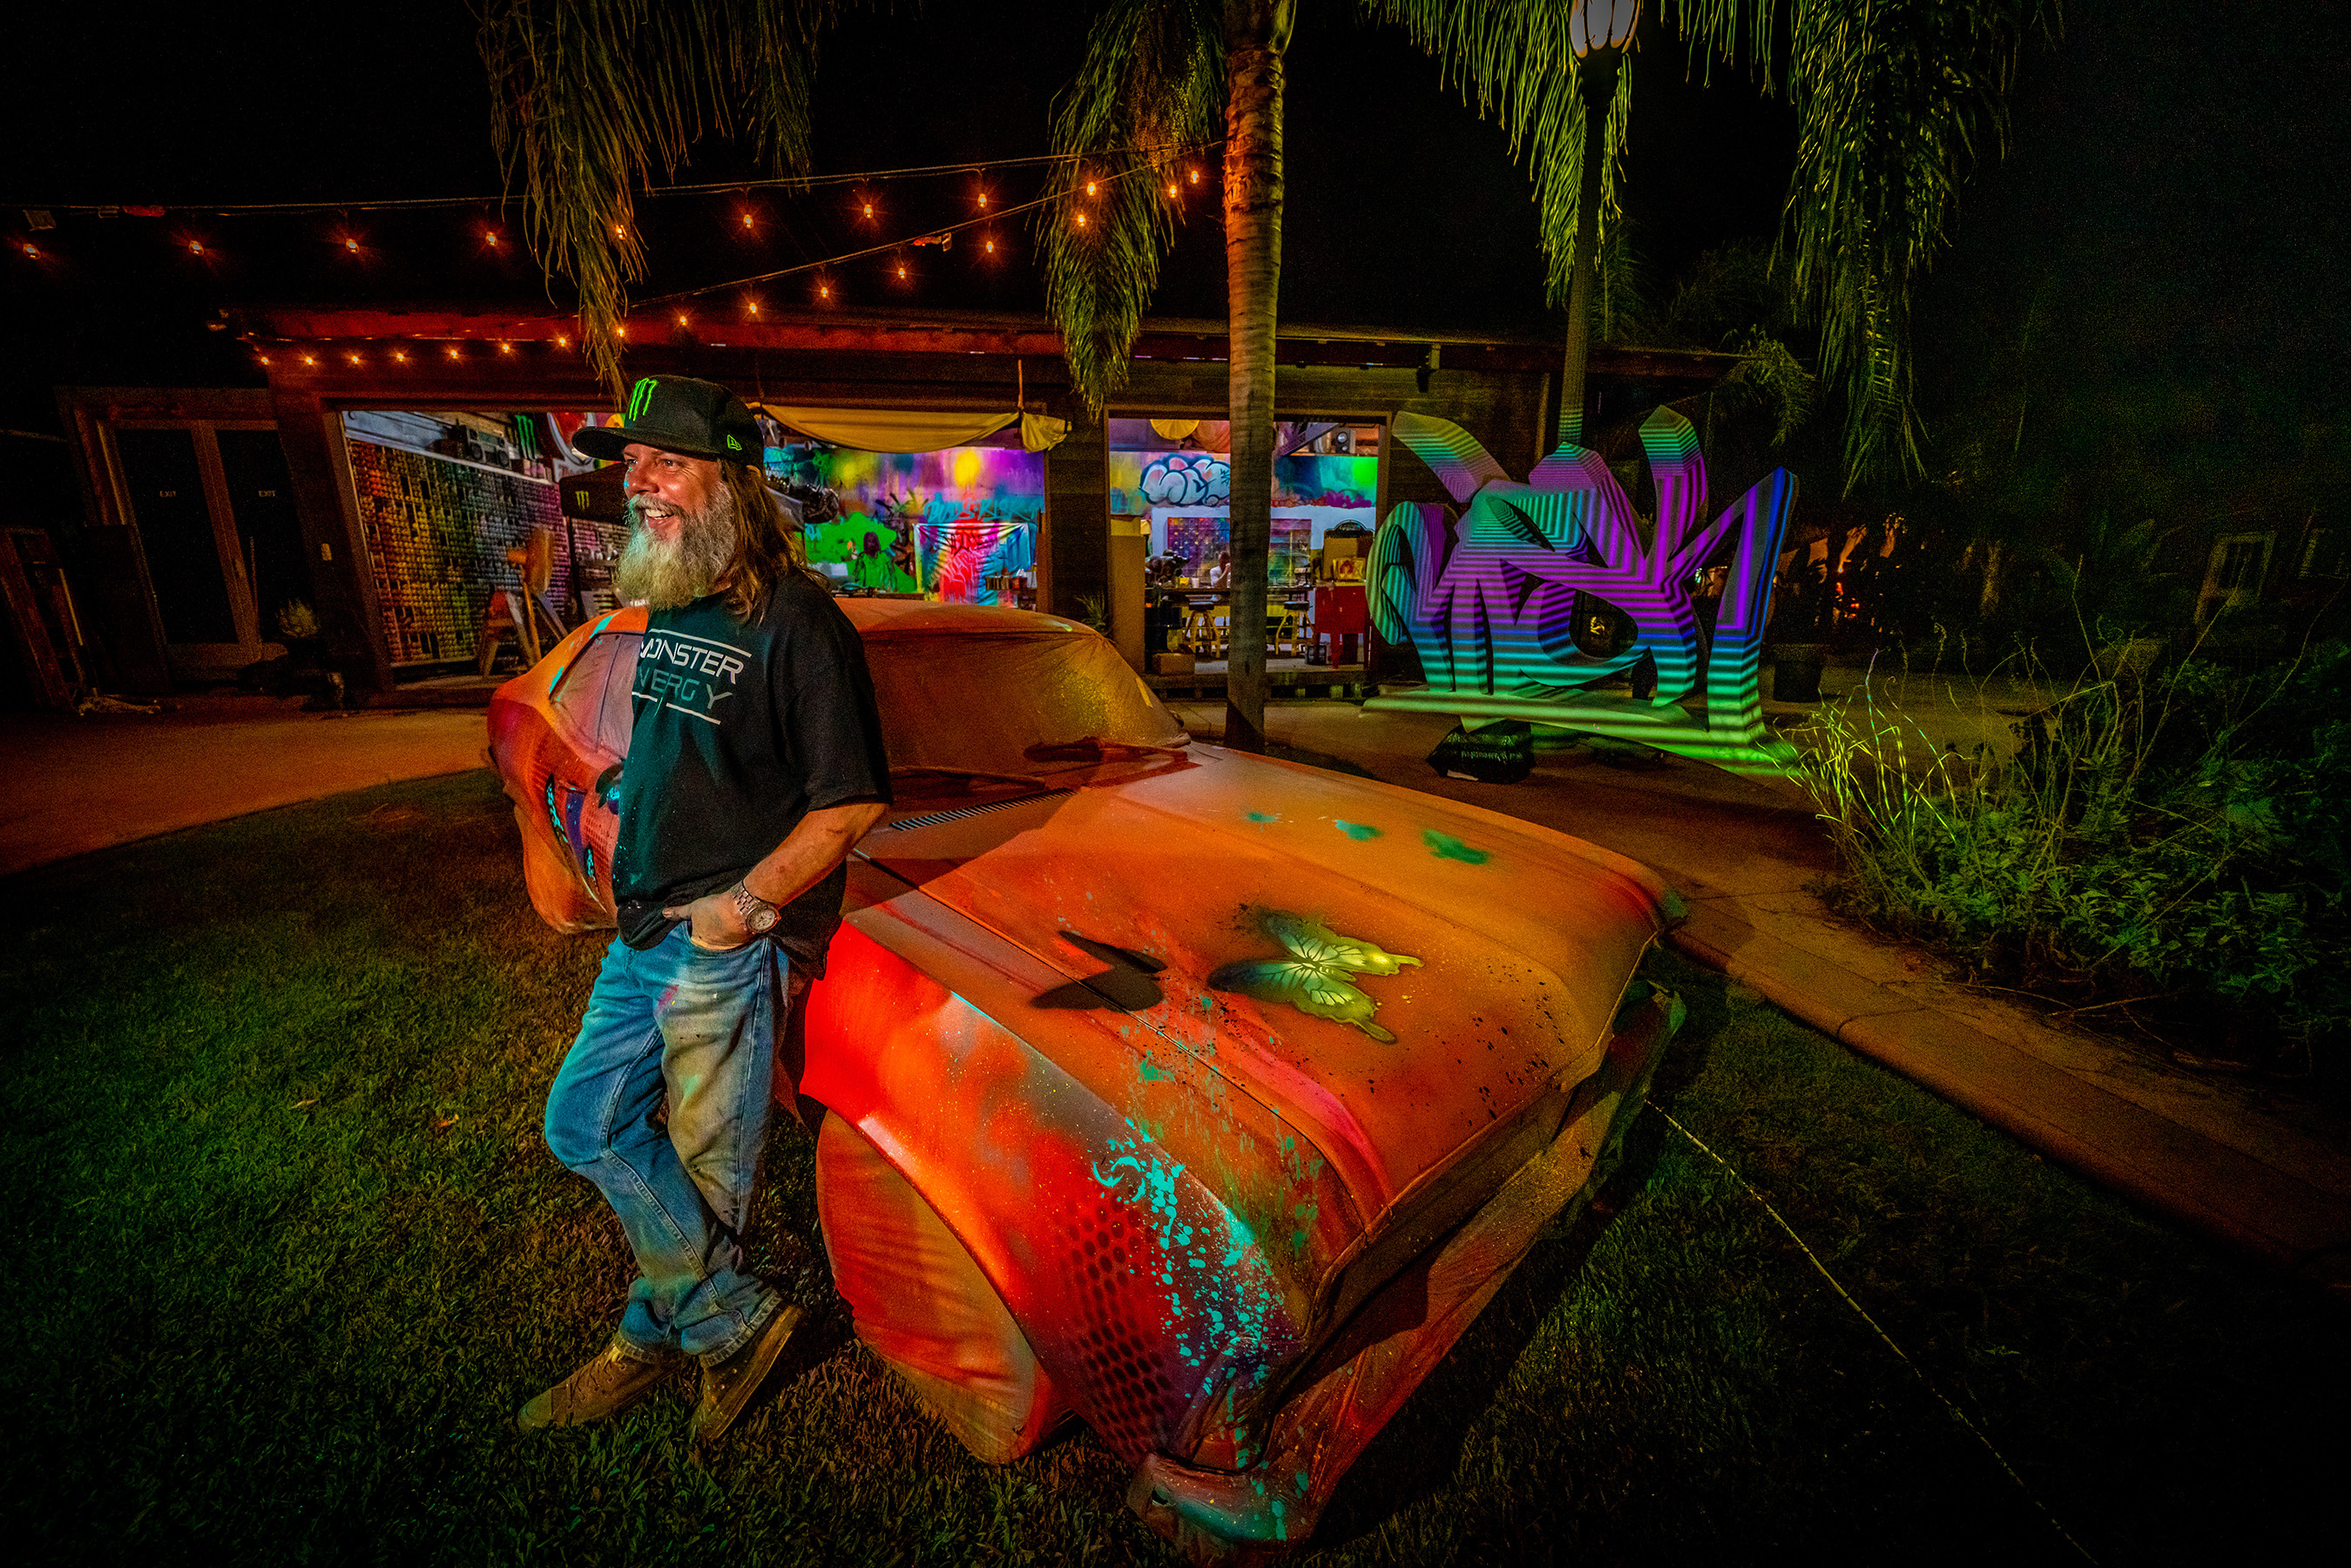 Legendary street artist RISK designs "Khaotic" car in partnership with Monster Energy